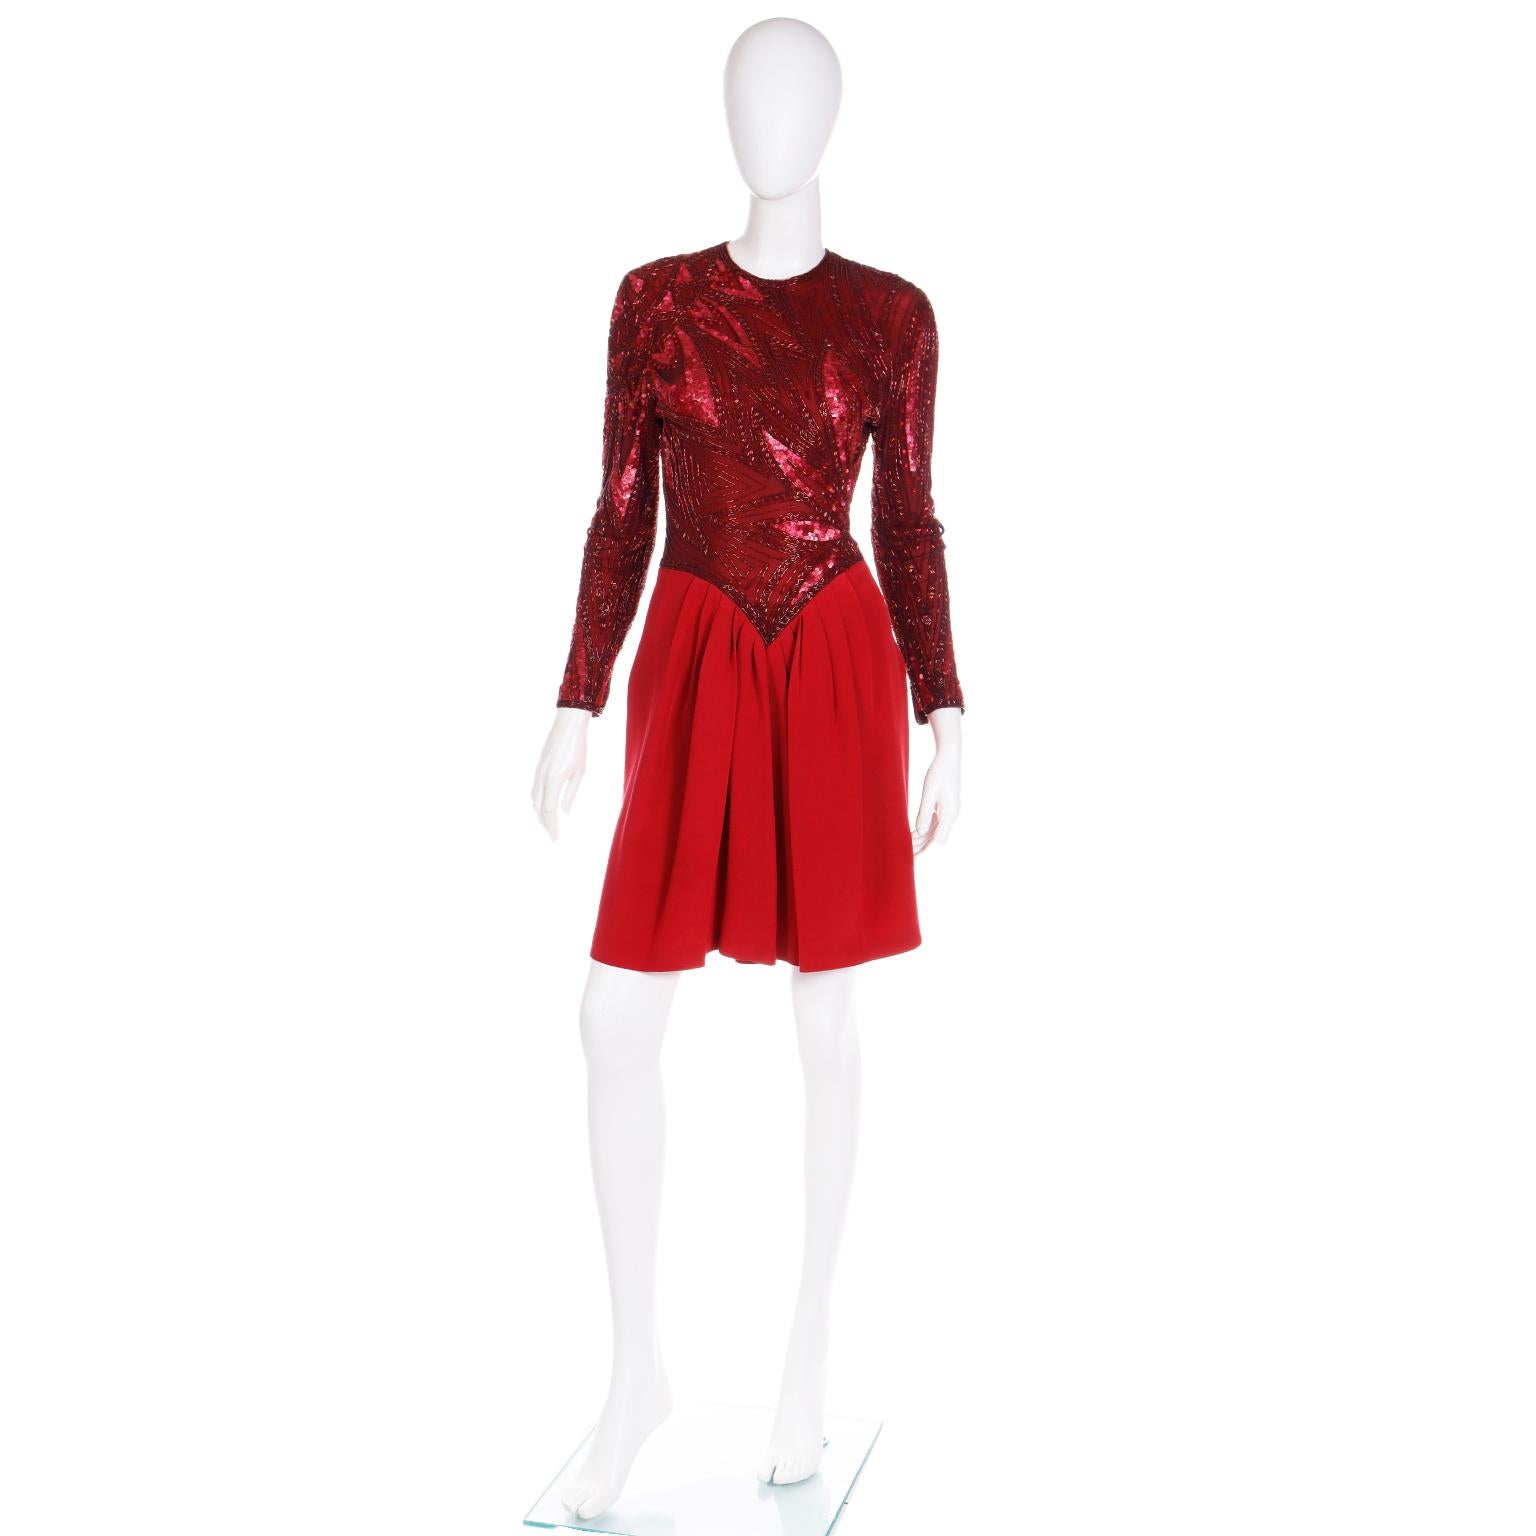 Cette incroyable robe de soirée vintage Bob Mackie Boutique des années 1980 est un tel exemple de l'attention portée par Mackie aux détails dans ses créations. La robe a une jupe en crêpe de soie rouge uni et le corsage est en maille sur du crêpe